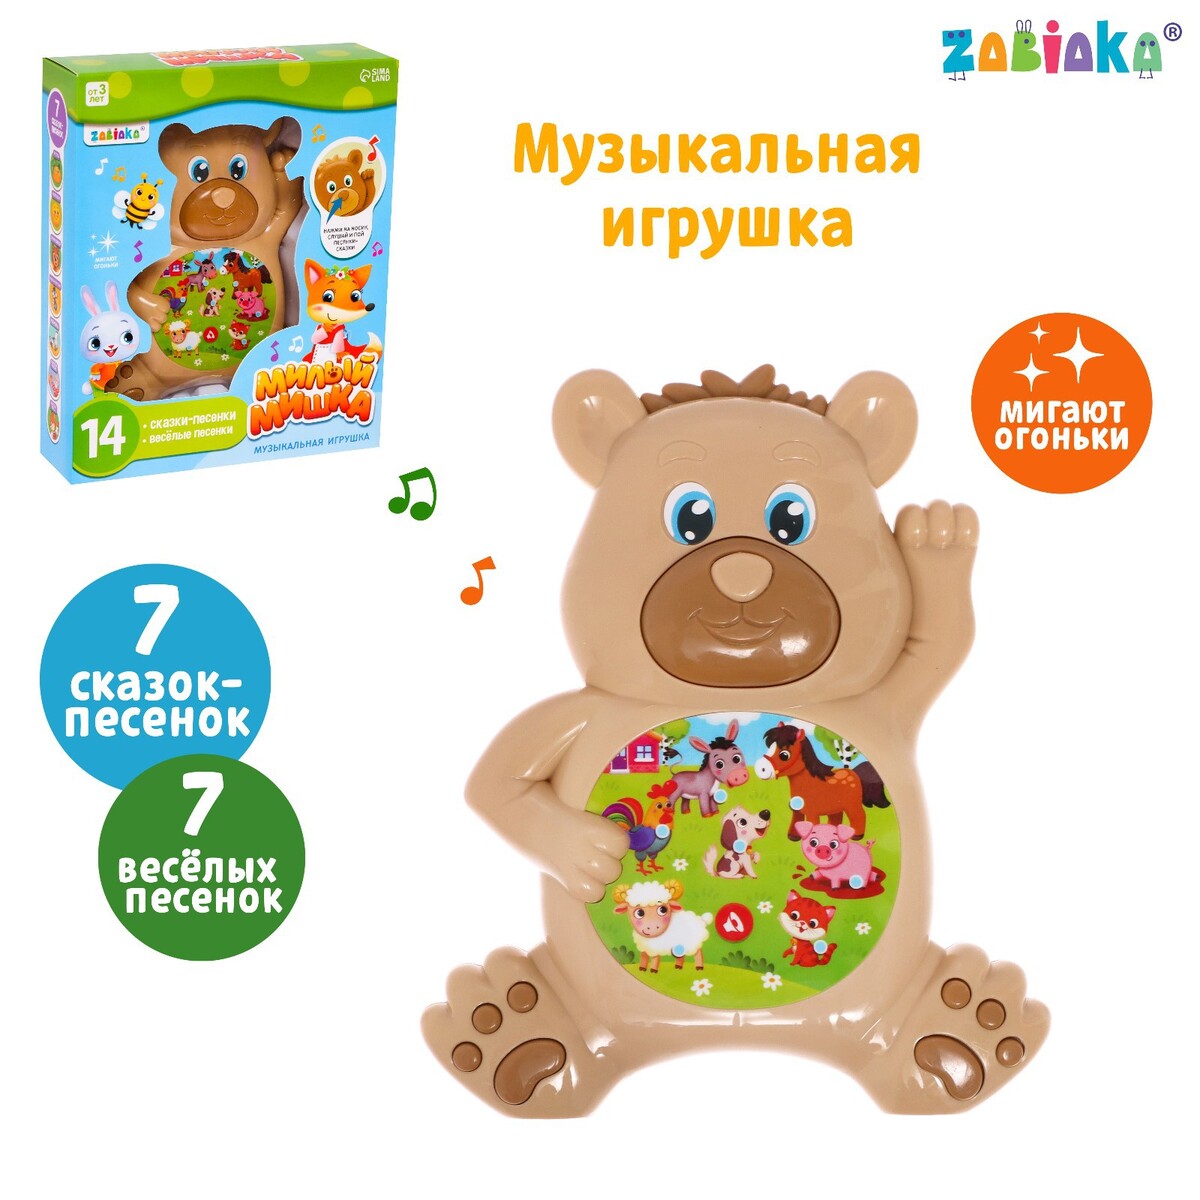 Музыкальная игрушка репка три медведя